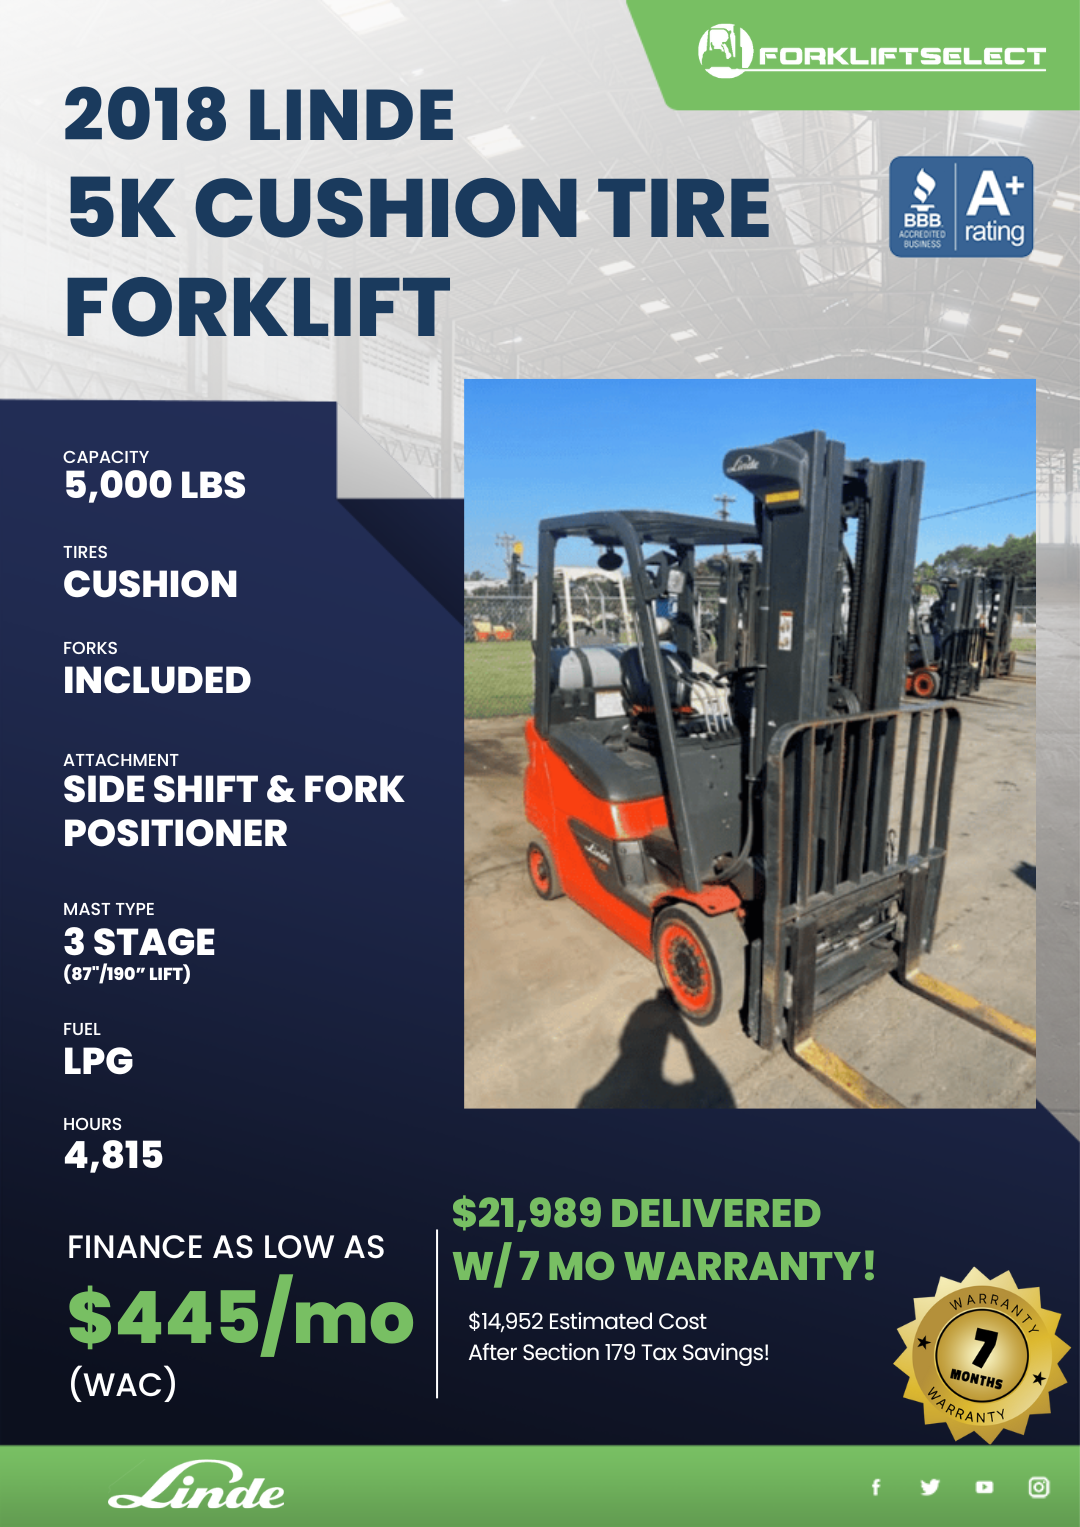 2018 Linde 5k Cushion Tire Forklift